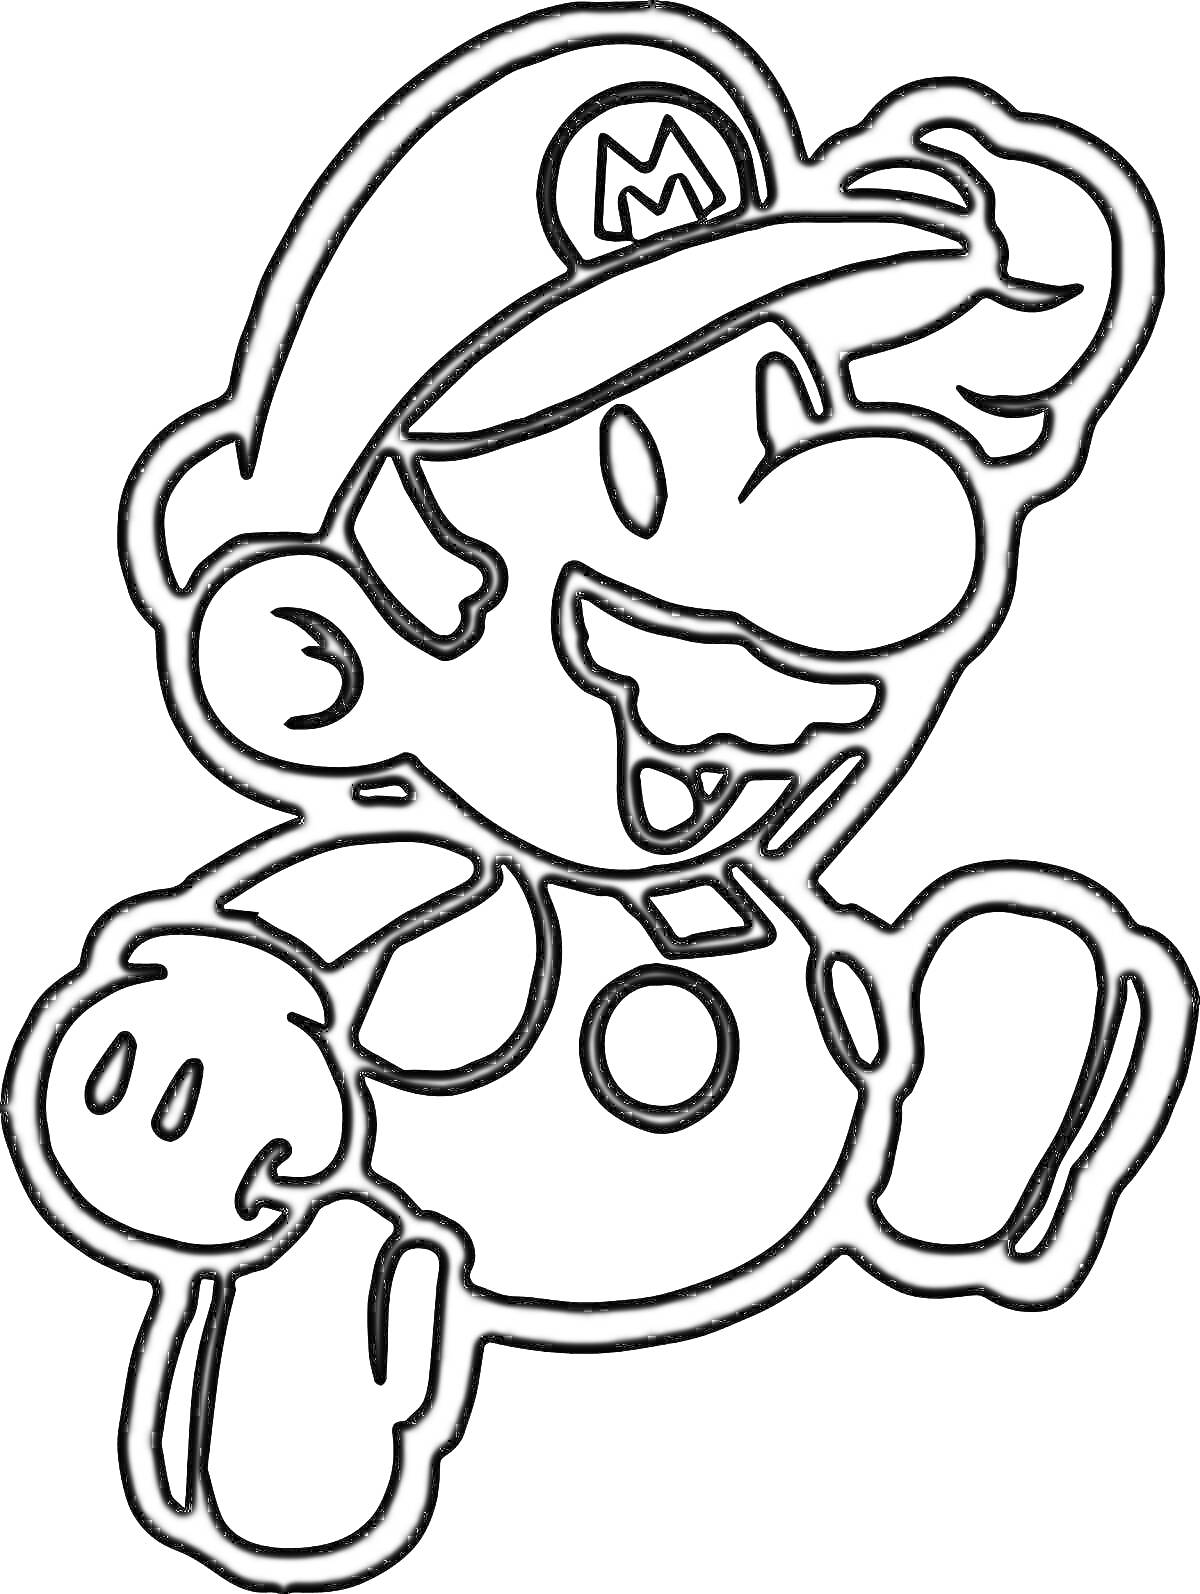 Супер Марио в кепке с буквой M, улыбающийся и поднимающий правую руку